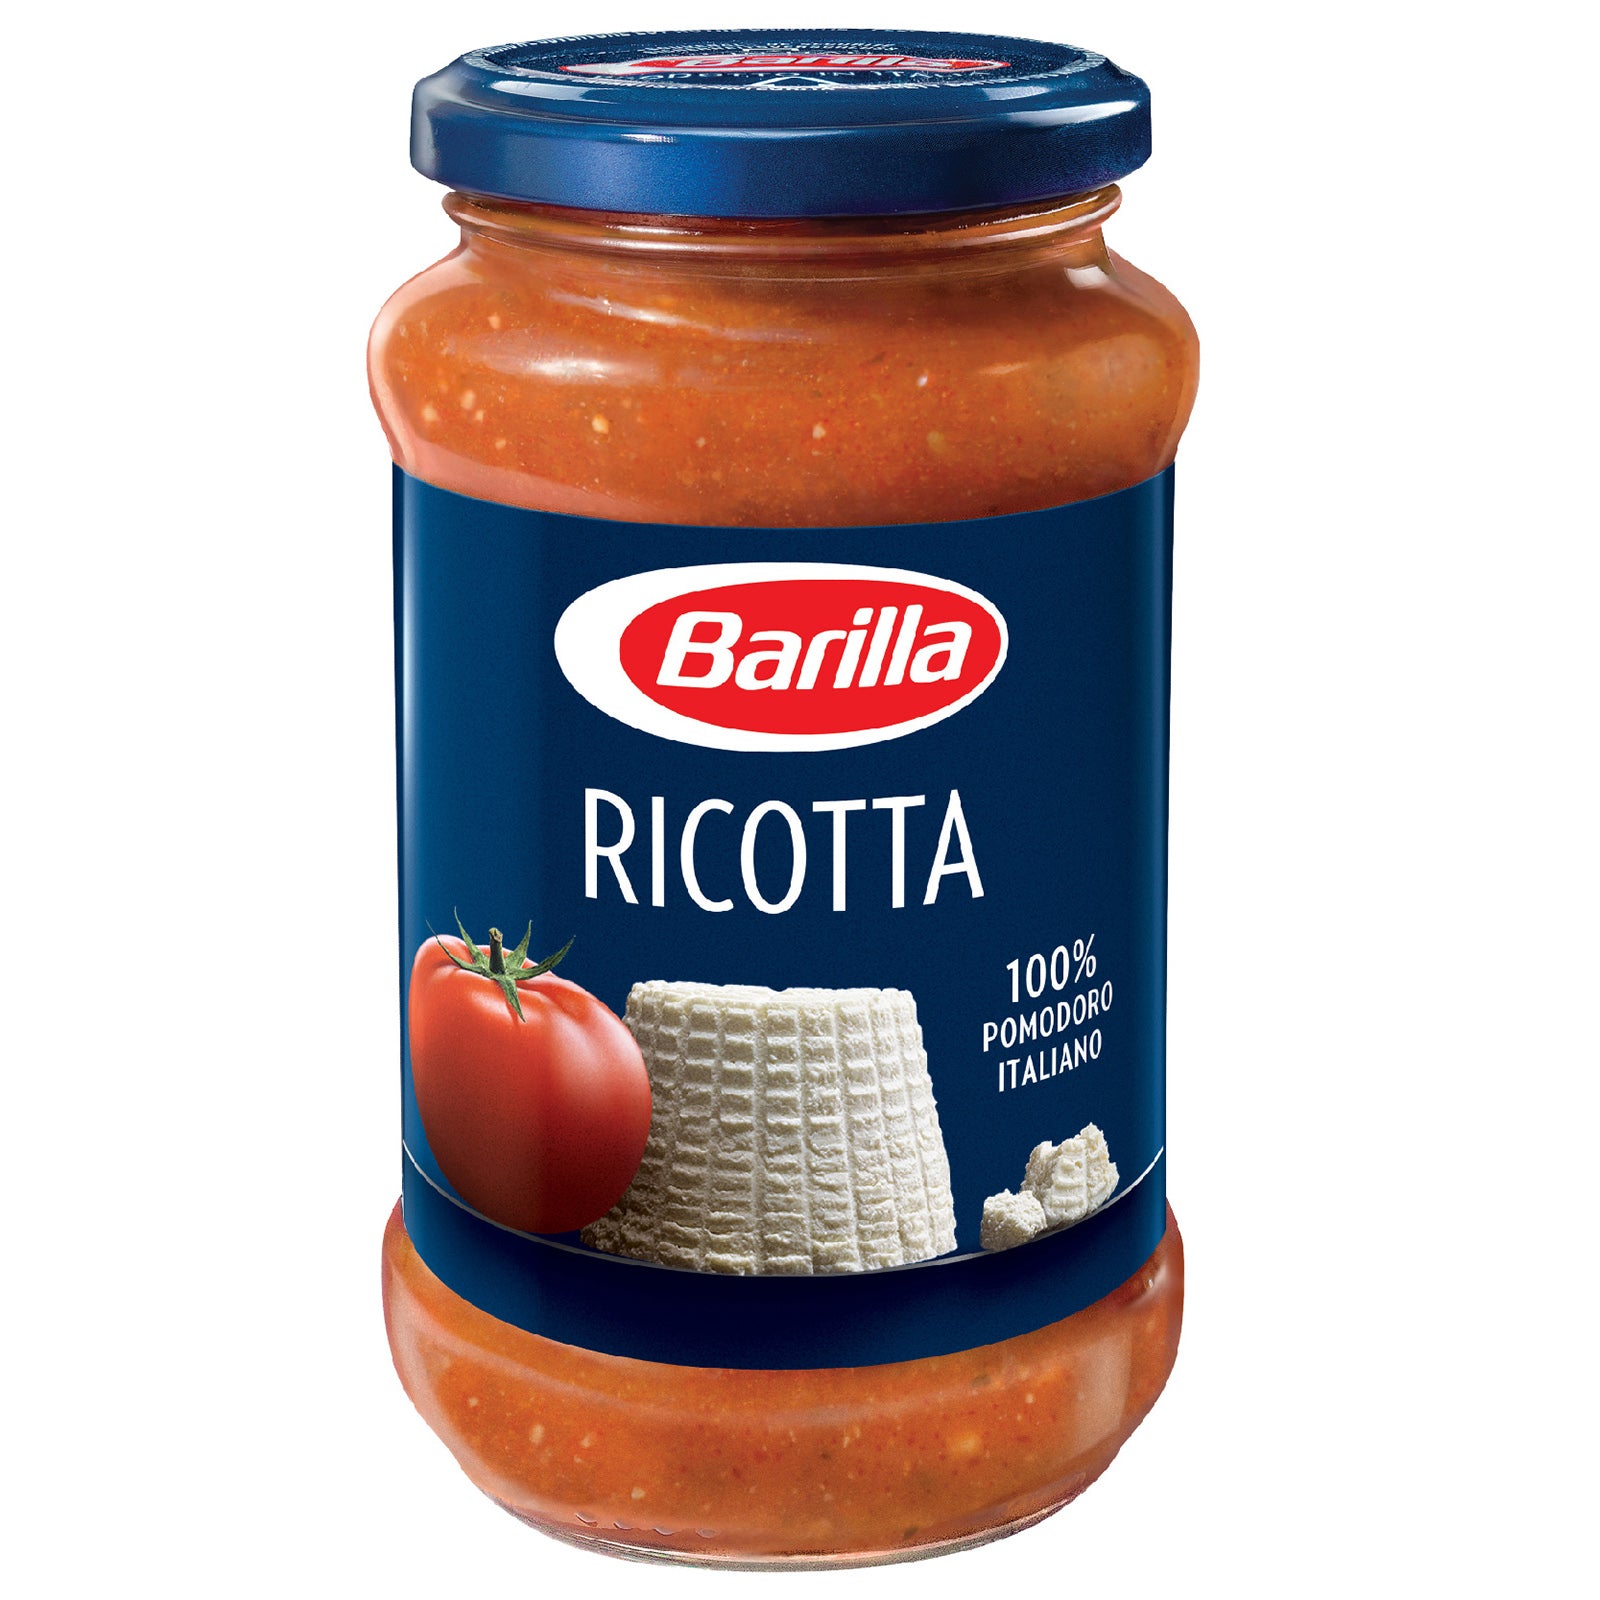 Barilla Ricotta Sauce Click Pasta with Italian Cuisine - 400g Tomato